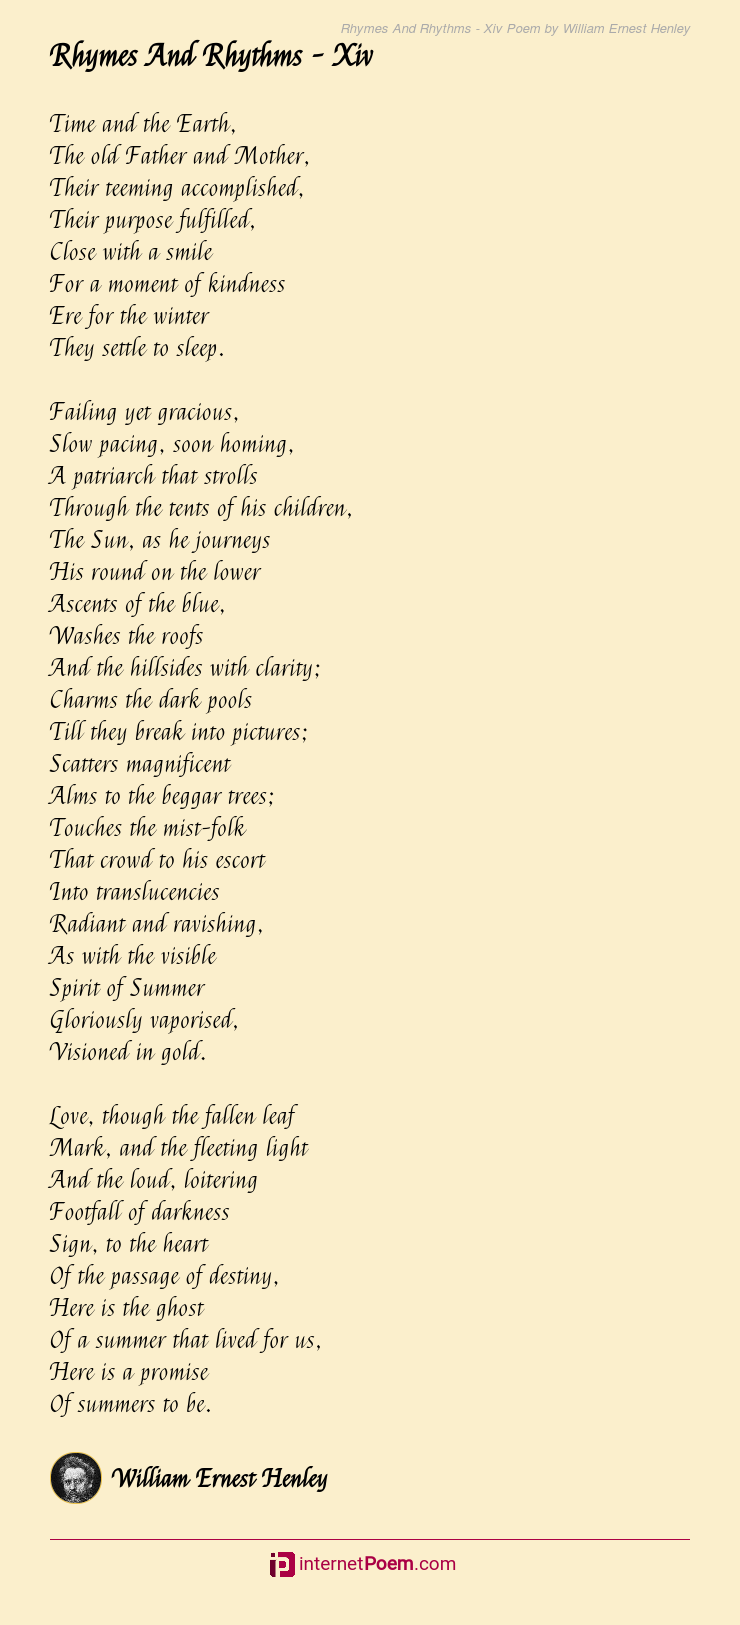 Rhymes And Rhythms - Xiv Poem by William Ernest Henley